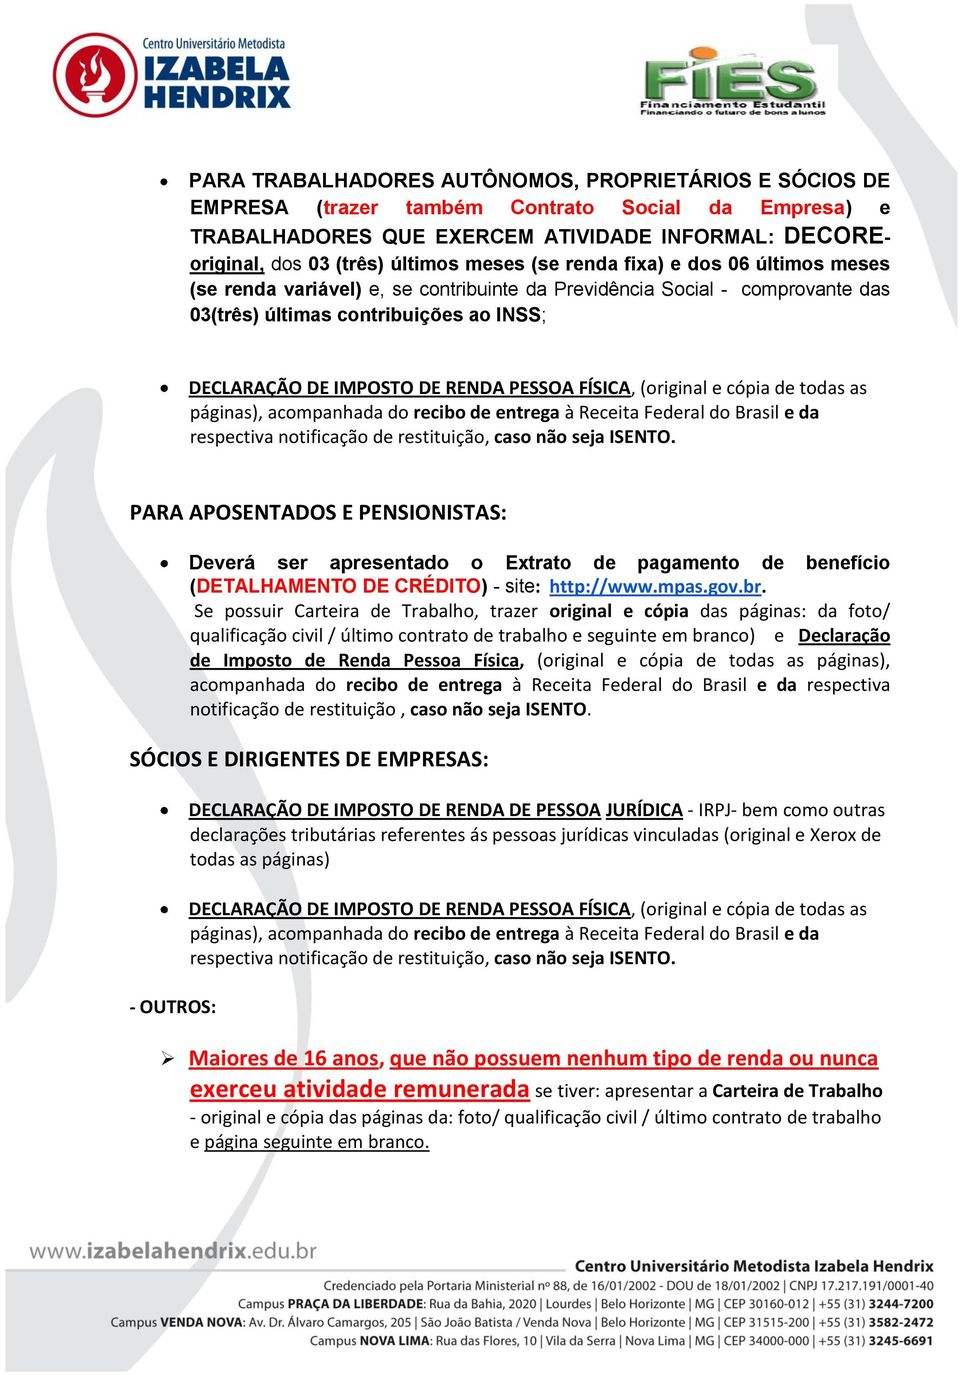 FÍSICA, (original e cópia de todas as páginas), acompanhada do recibo de entrega à Receita Federal do Brasil e da respectiva notificação de restituição, caso não seja ISENTO.